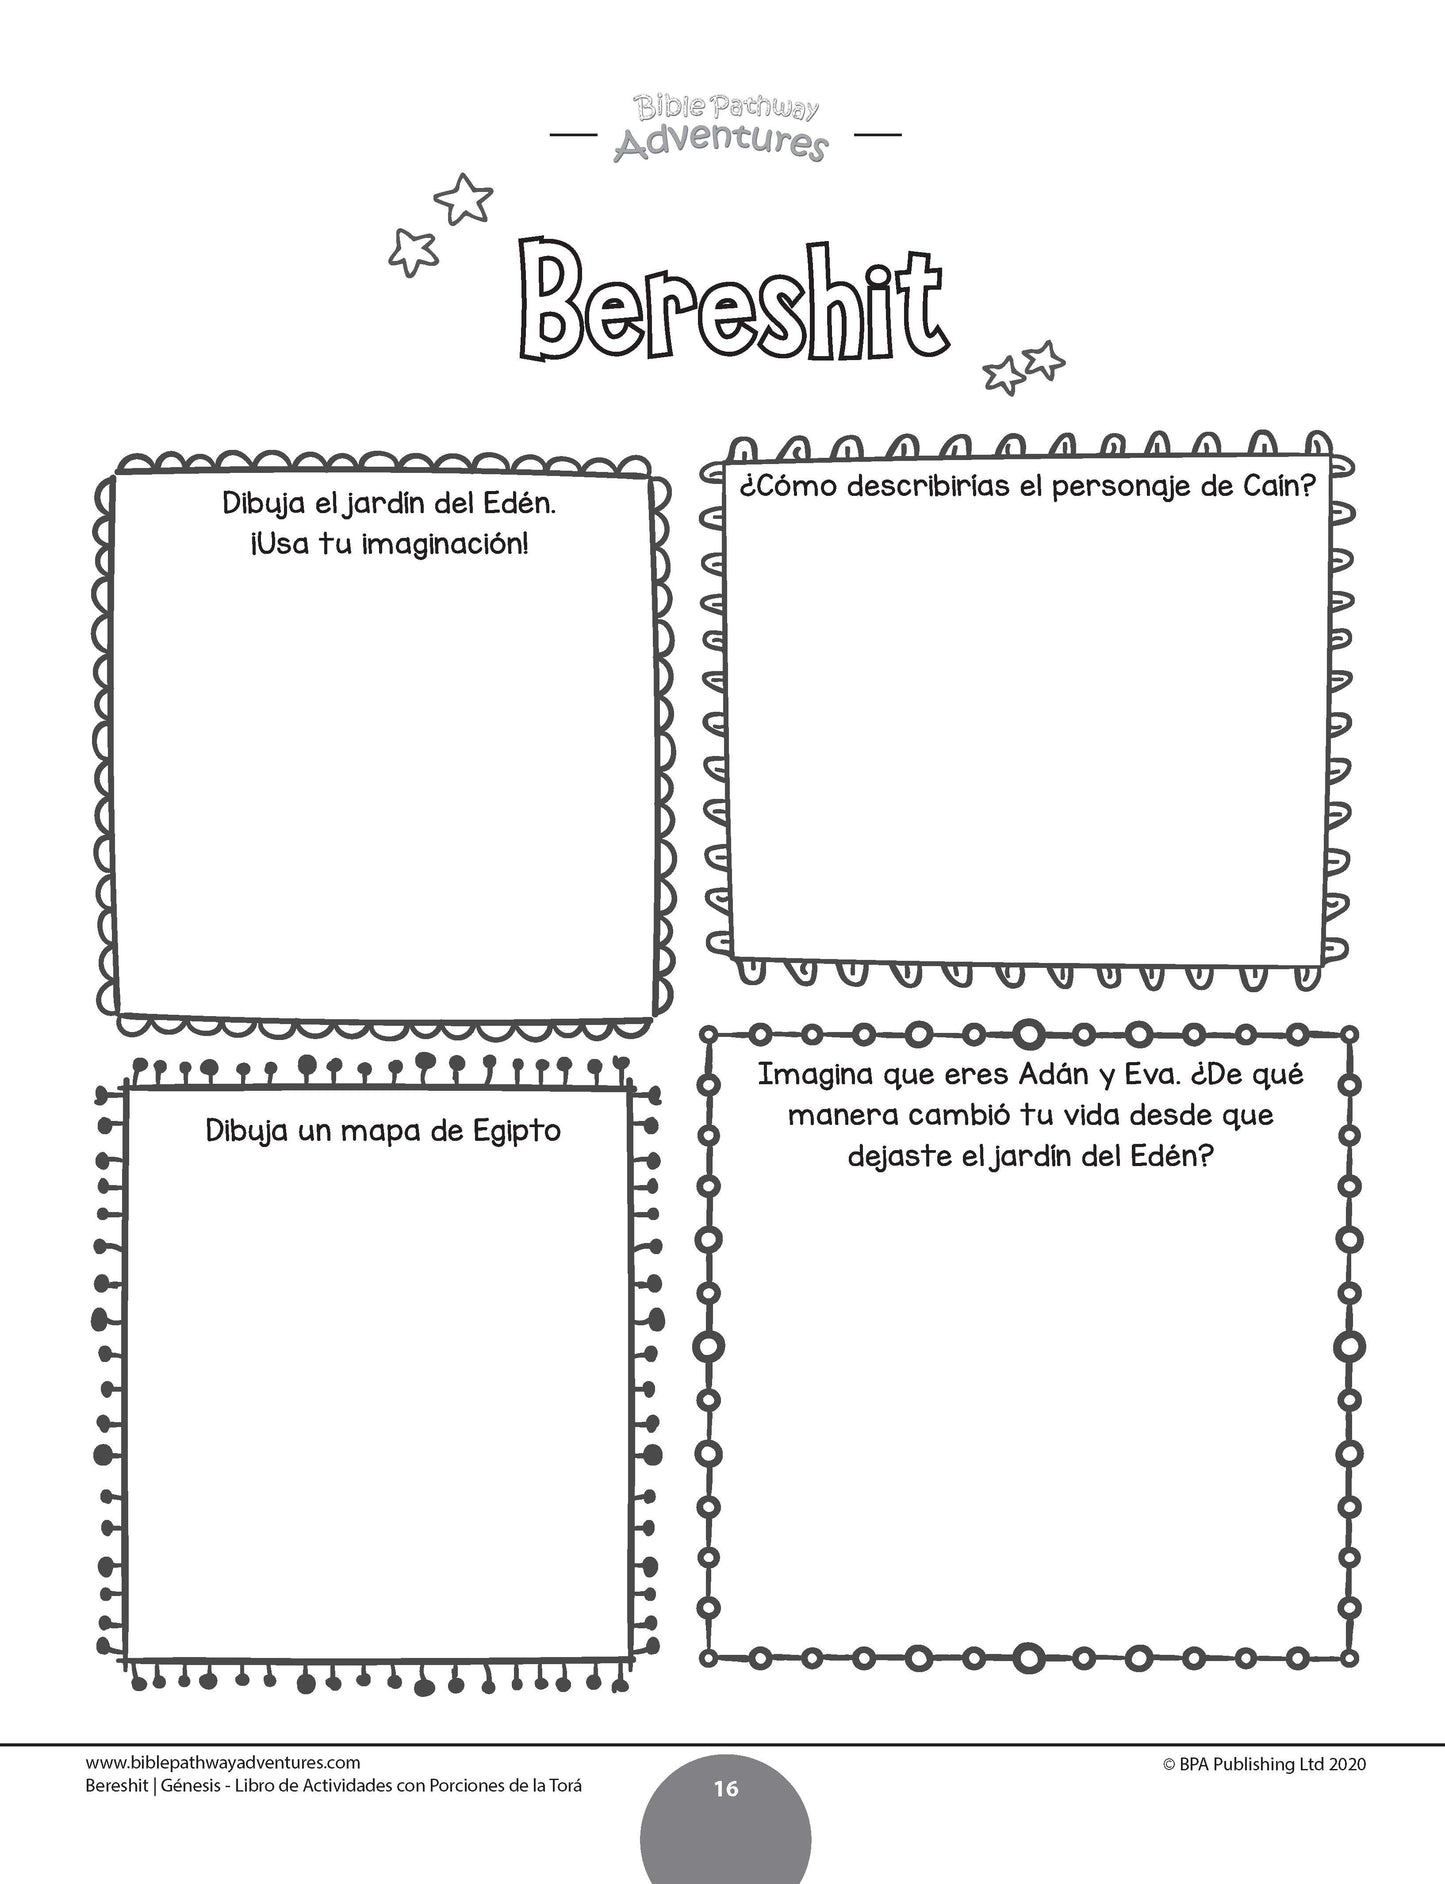 Bereshit / Génesis: Libro de actividades con porciones de la Torá